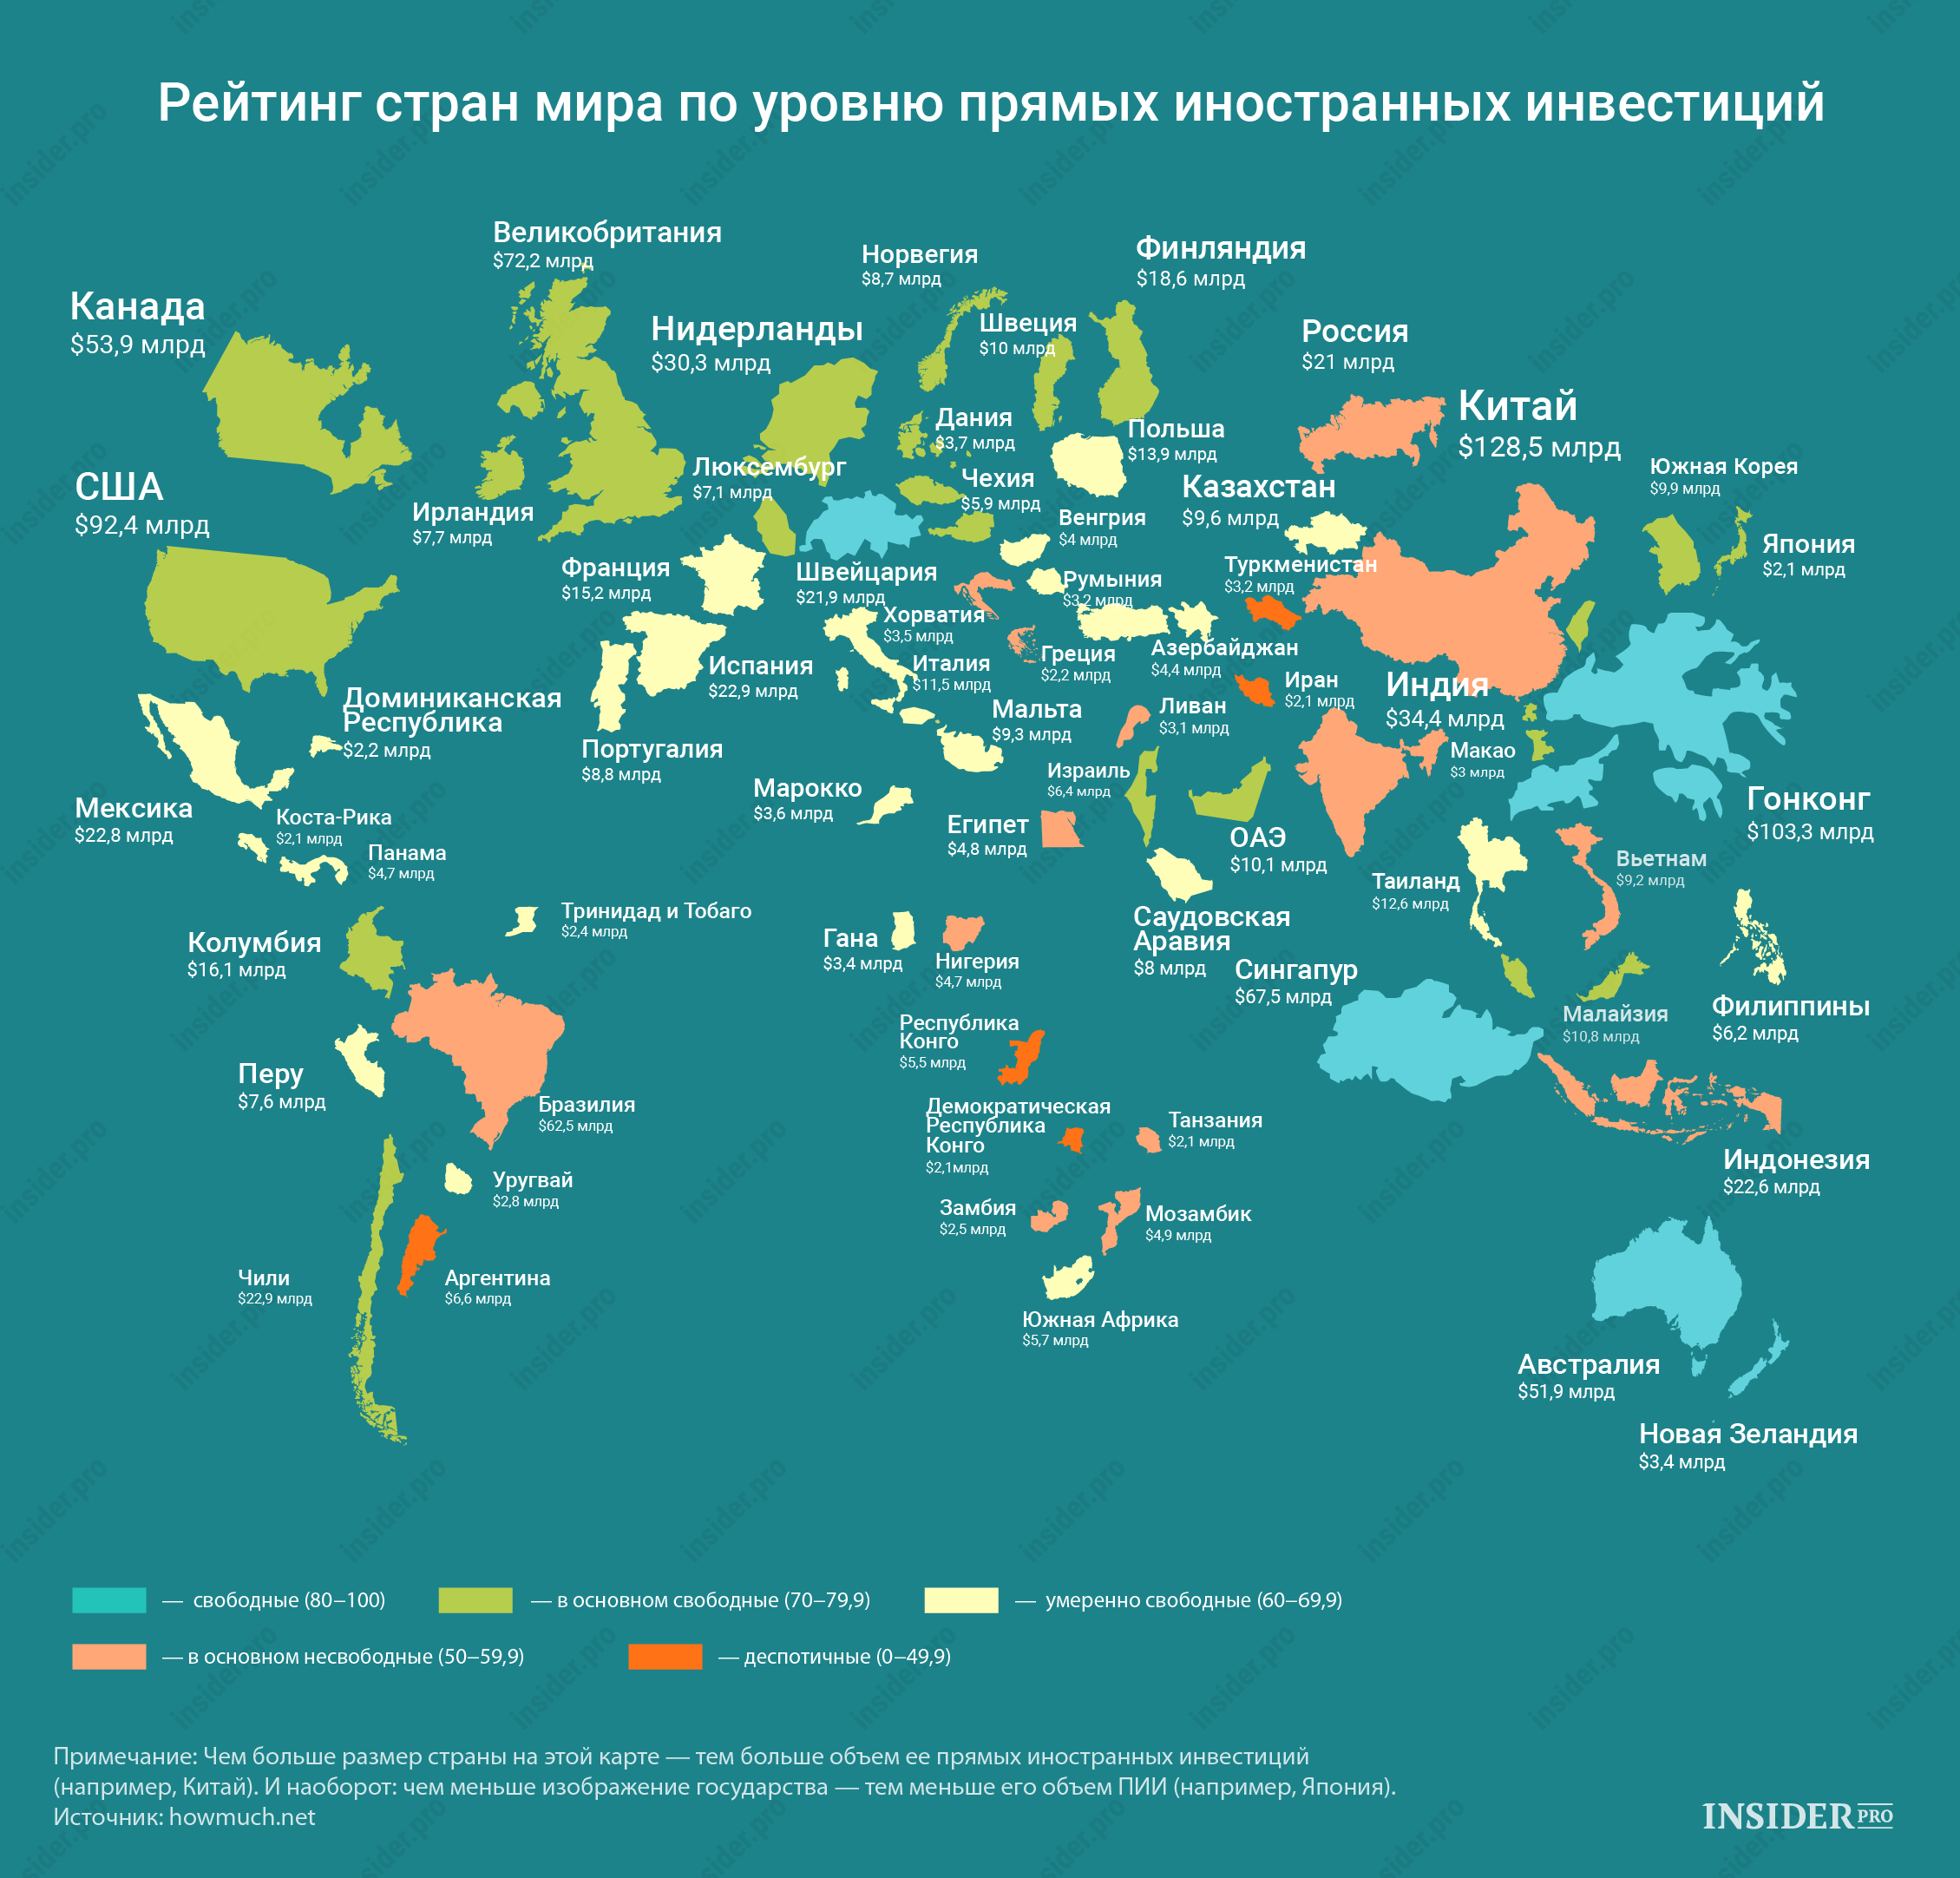 Иностранные карты работают в россии. Рейтинг стран по инвестициям. Список стран в мире.